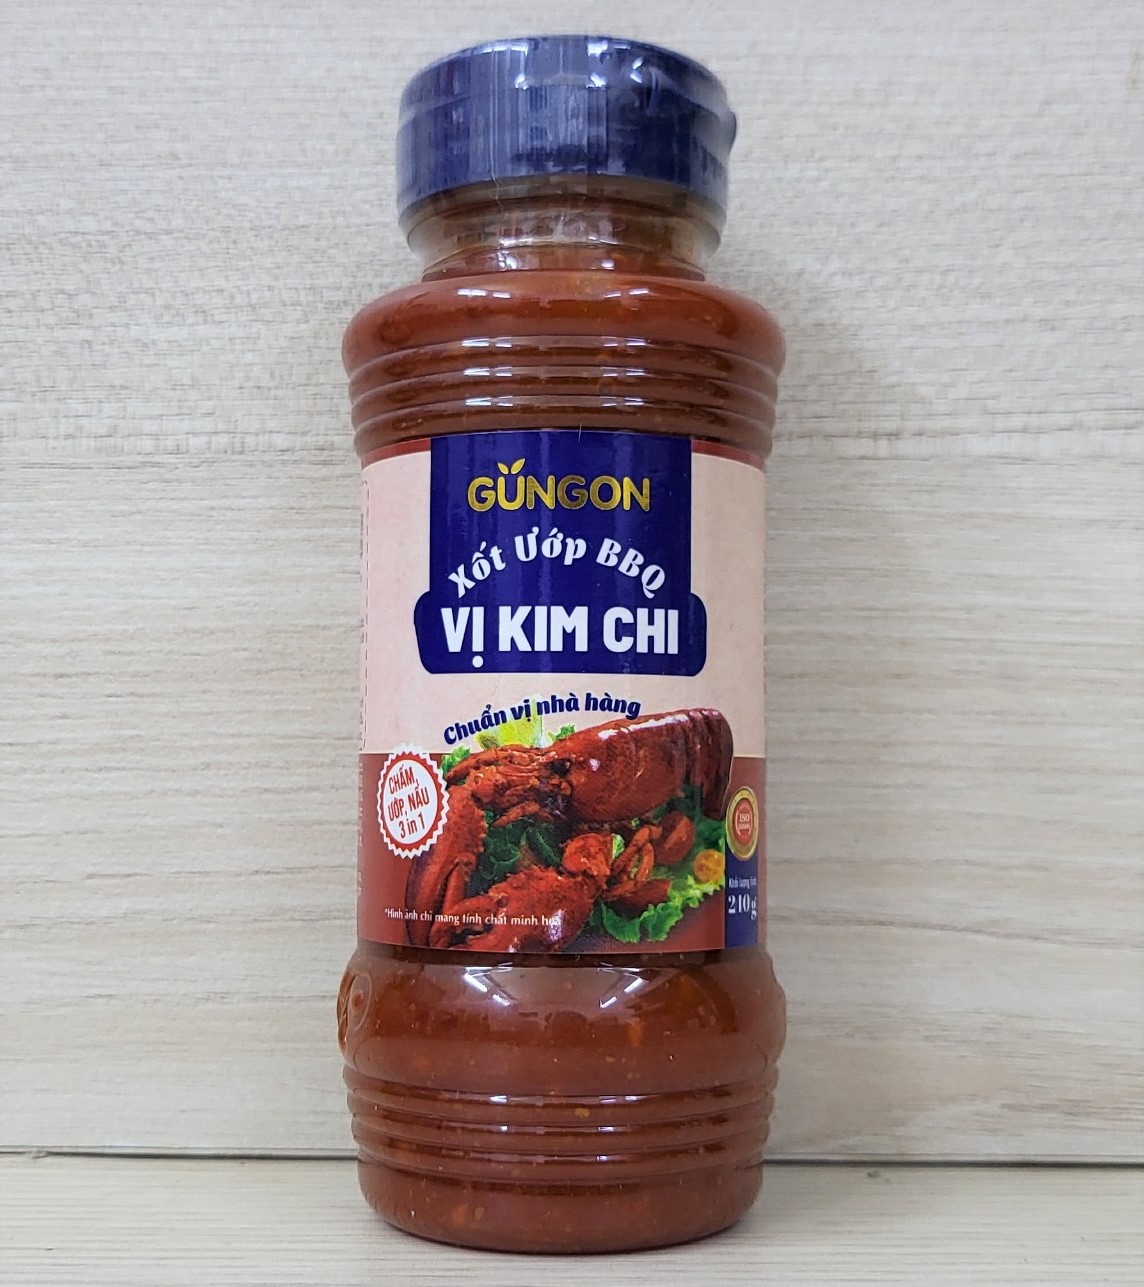 KC chai 240g SỐT ƯỚP BBQ VỊ KIM CHI chuẩn vị nhà hàng GUNGON Kim Chi